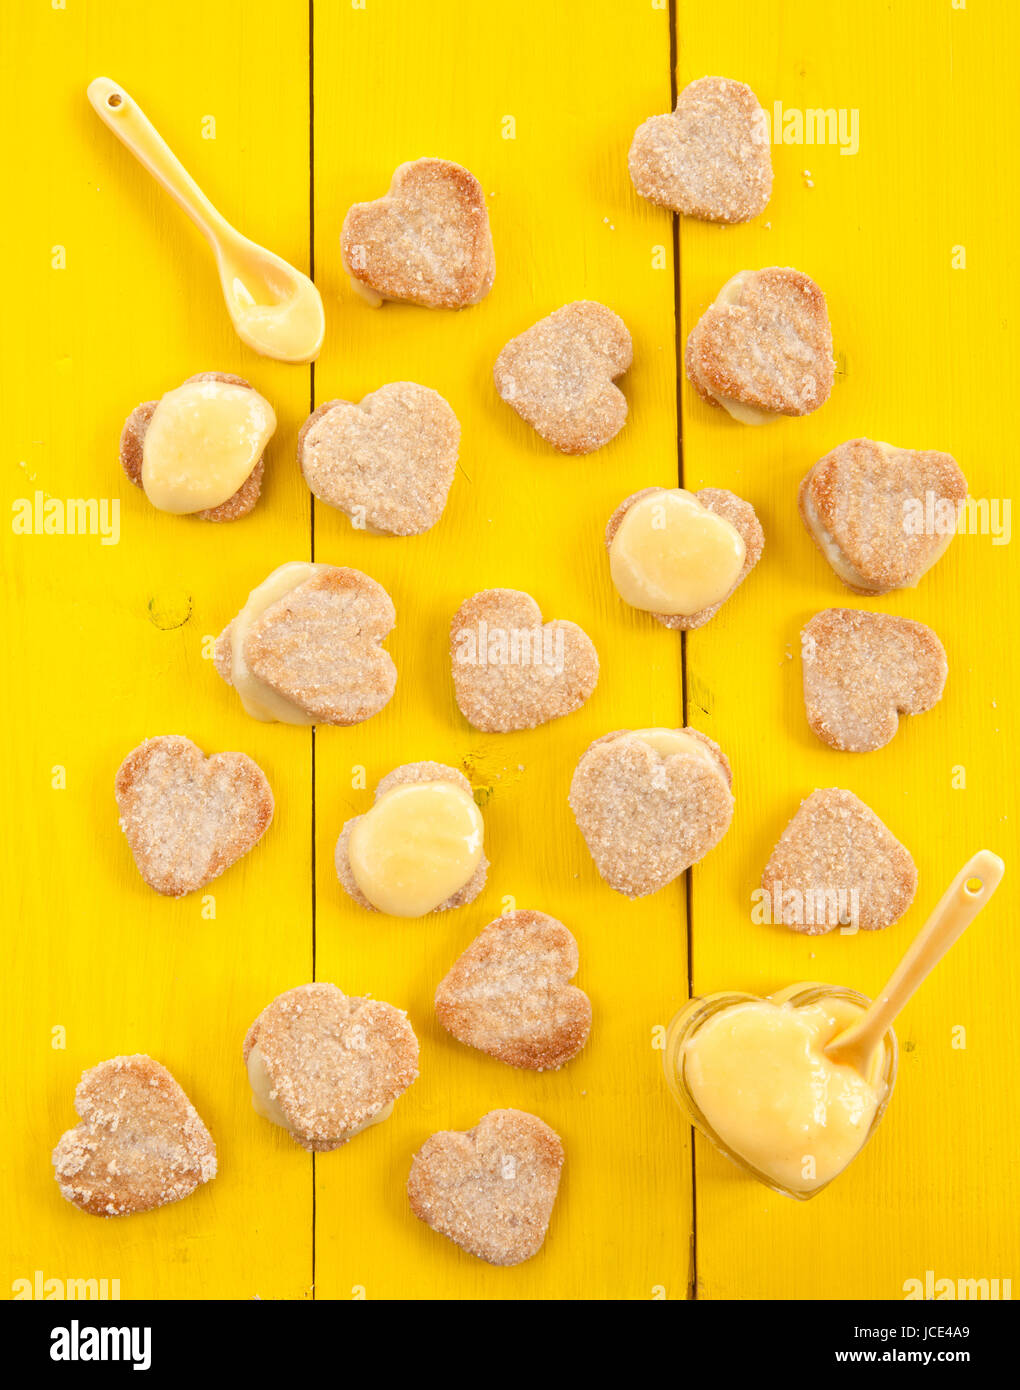 Herz Kekse mit lemon Curd auf gelbem Hintergrund Stock Photo